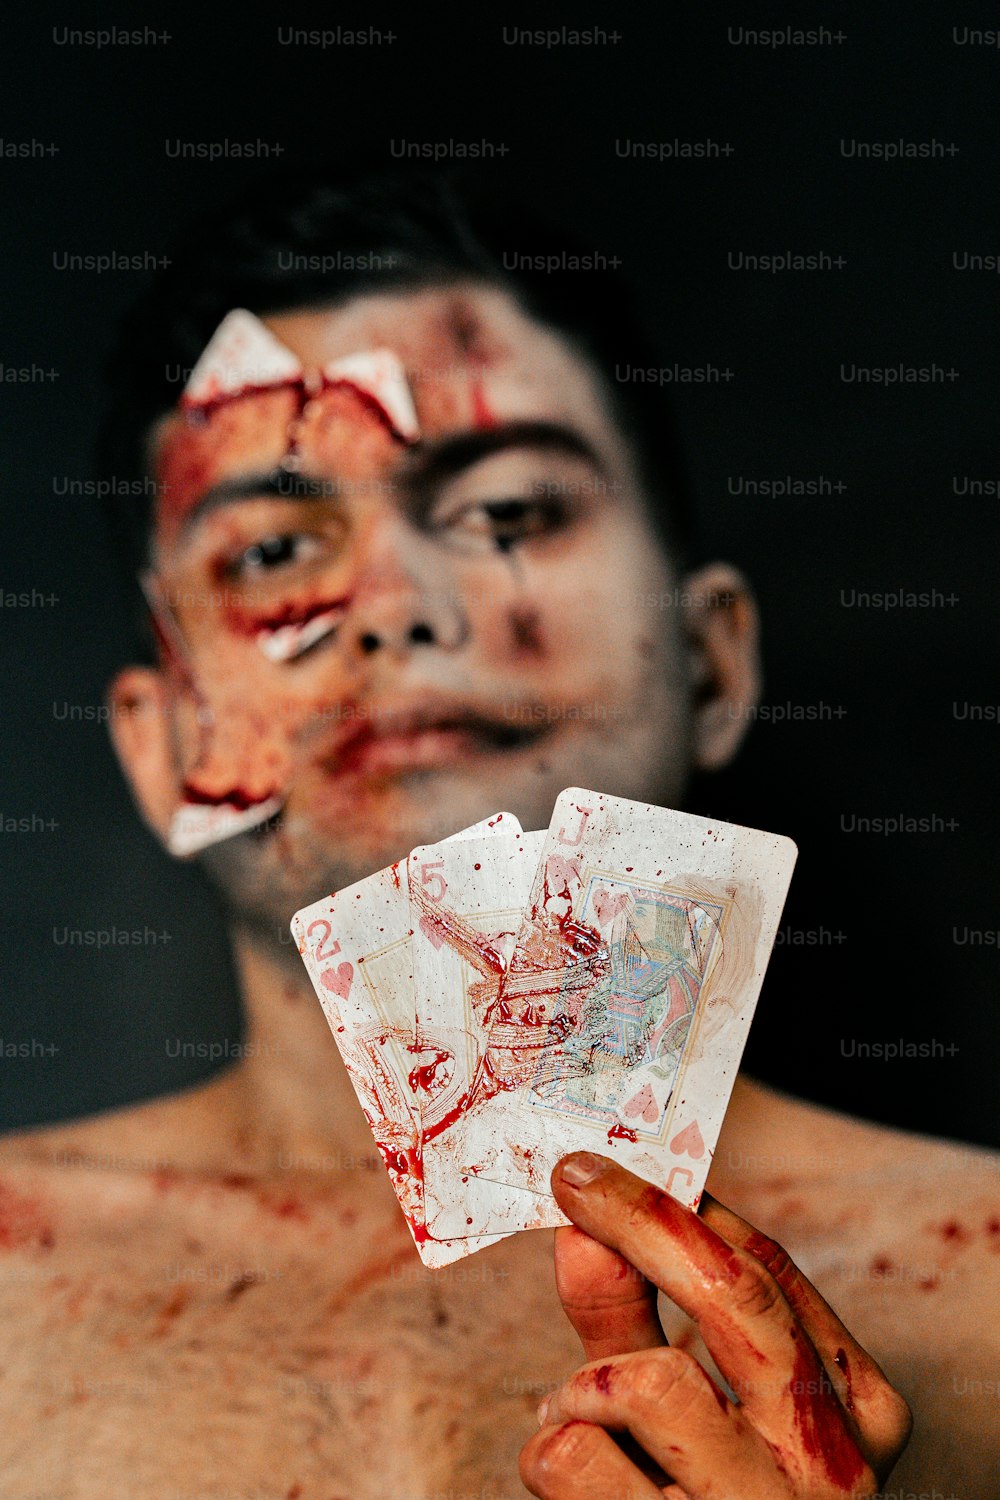 Ein Mann mit Blut im Gesicht, der eine Karte hält